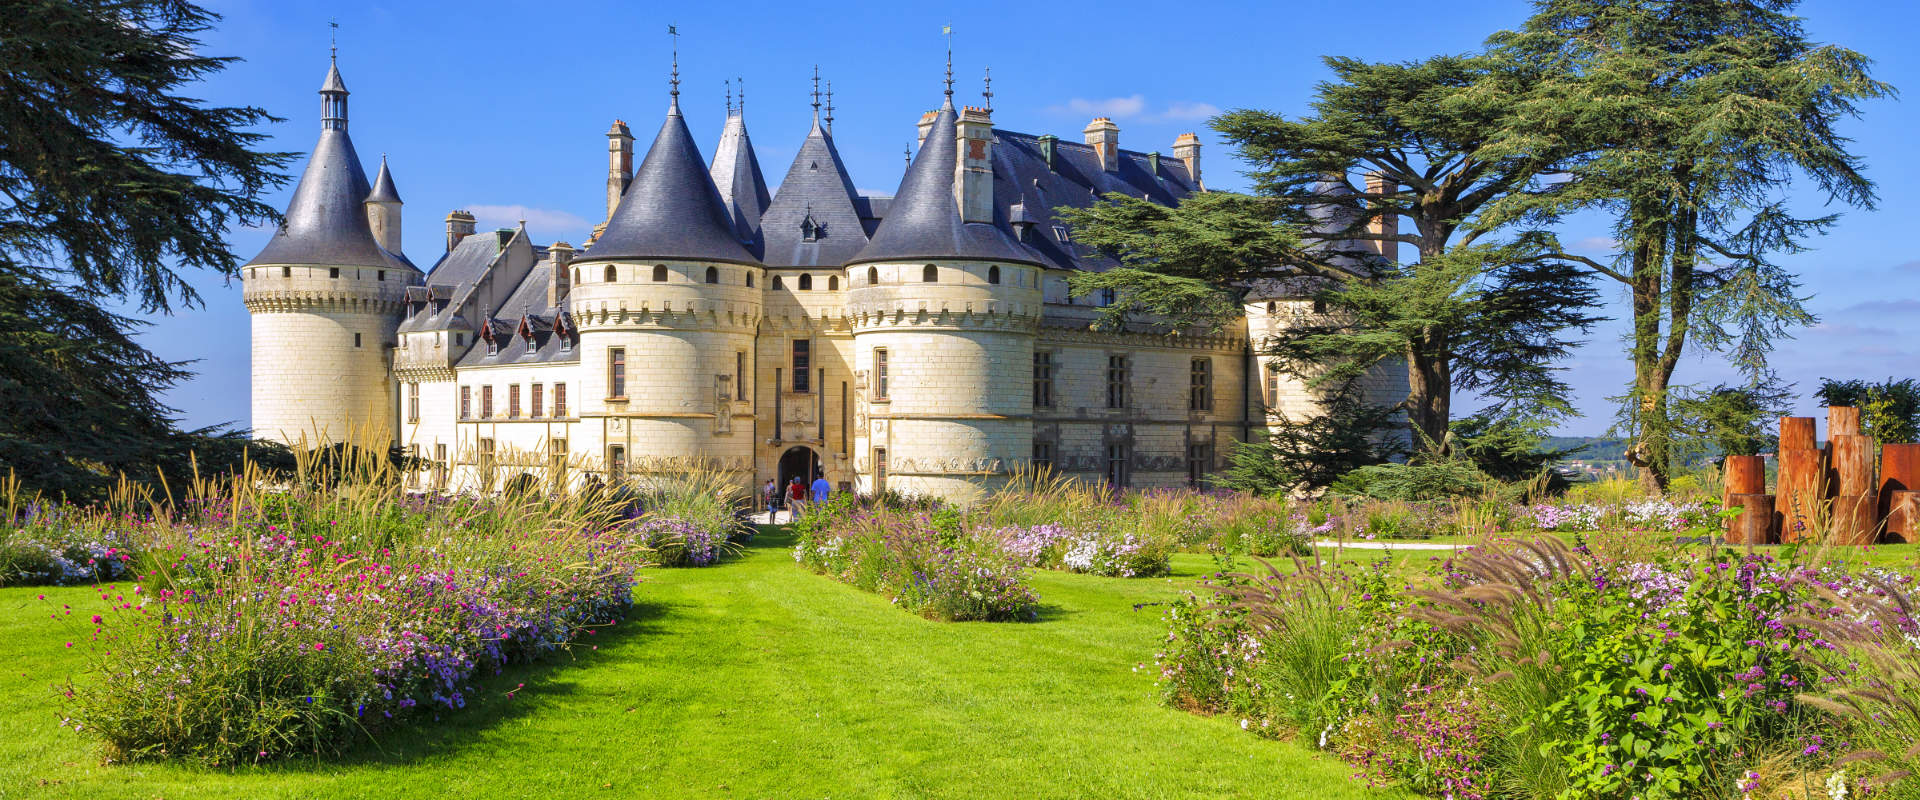 Schloss Chaumont sur Loire - Urlaubsinspiration